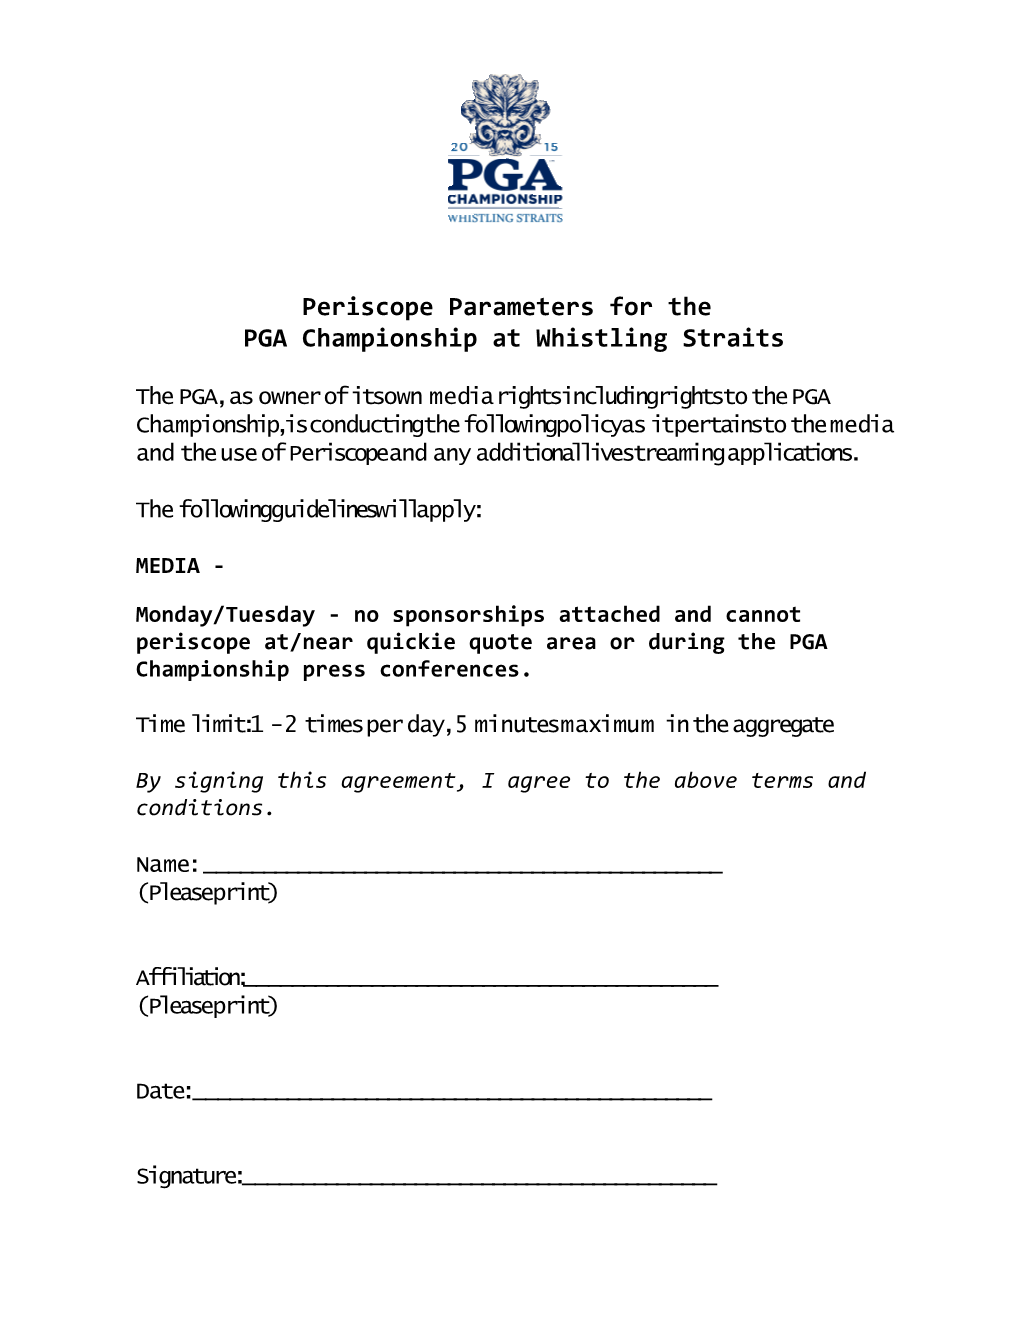 PGA Championship at Whistling Straits